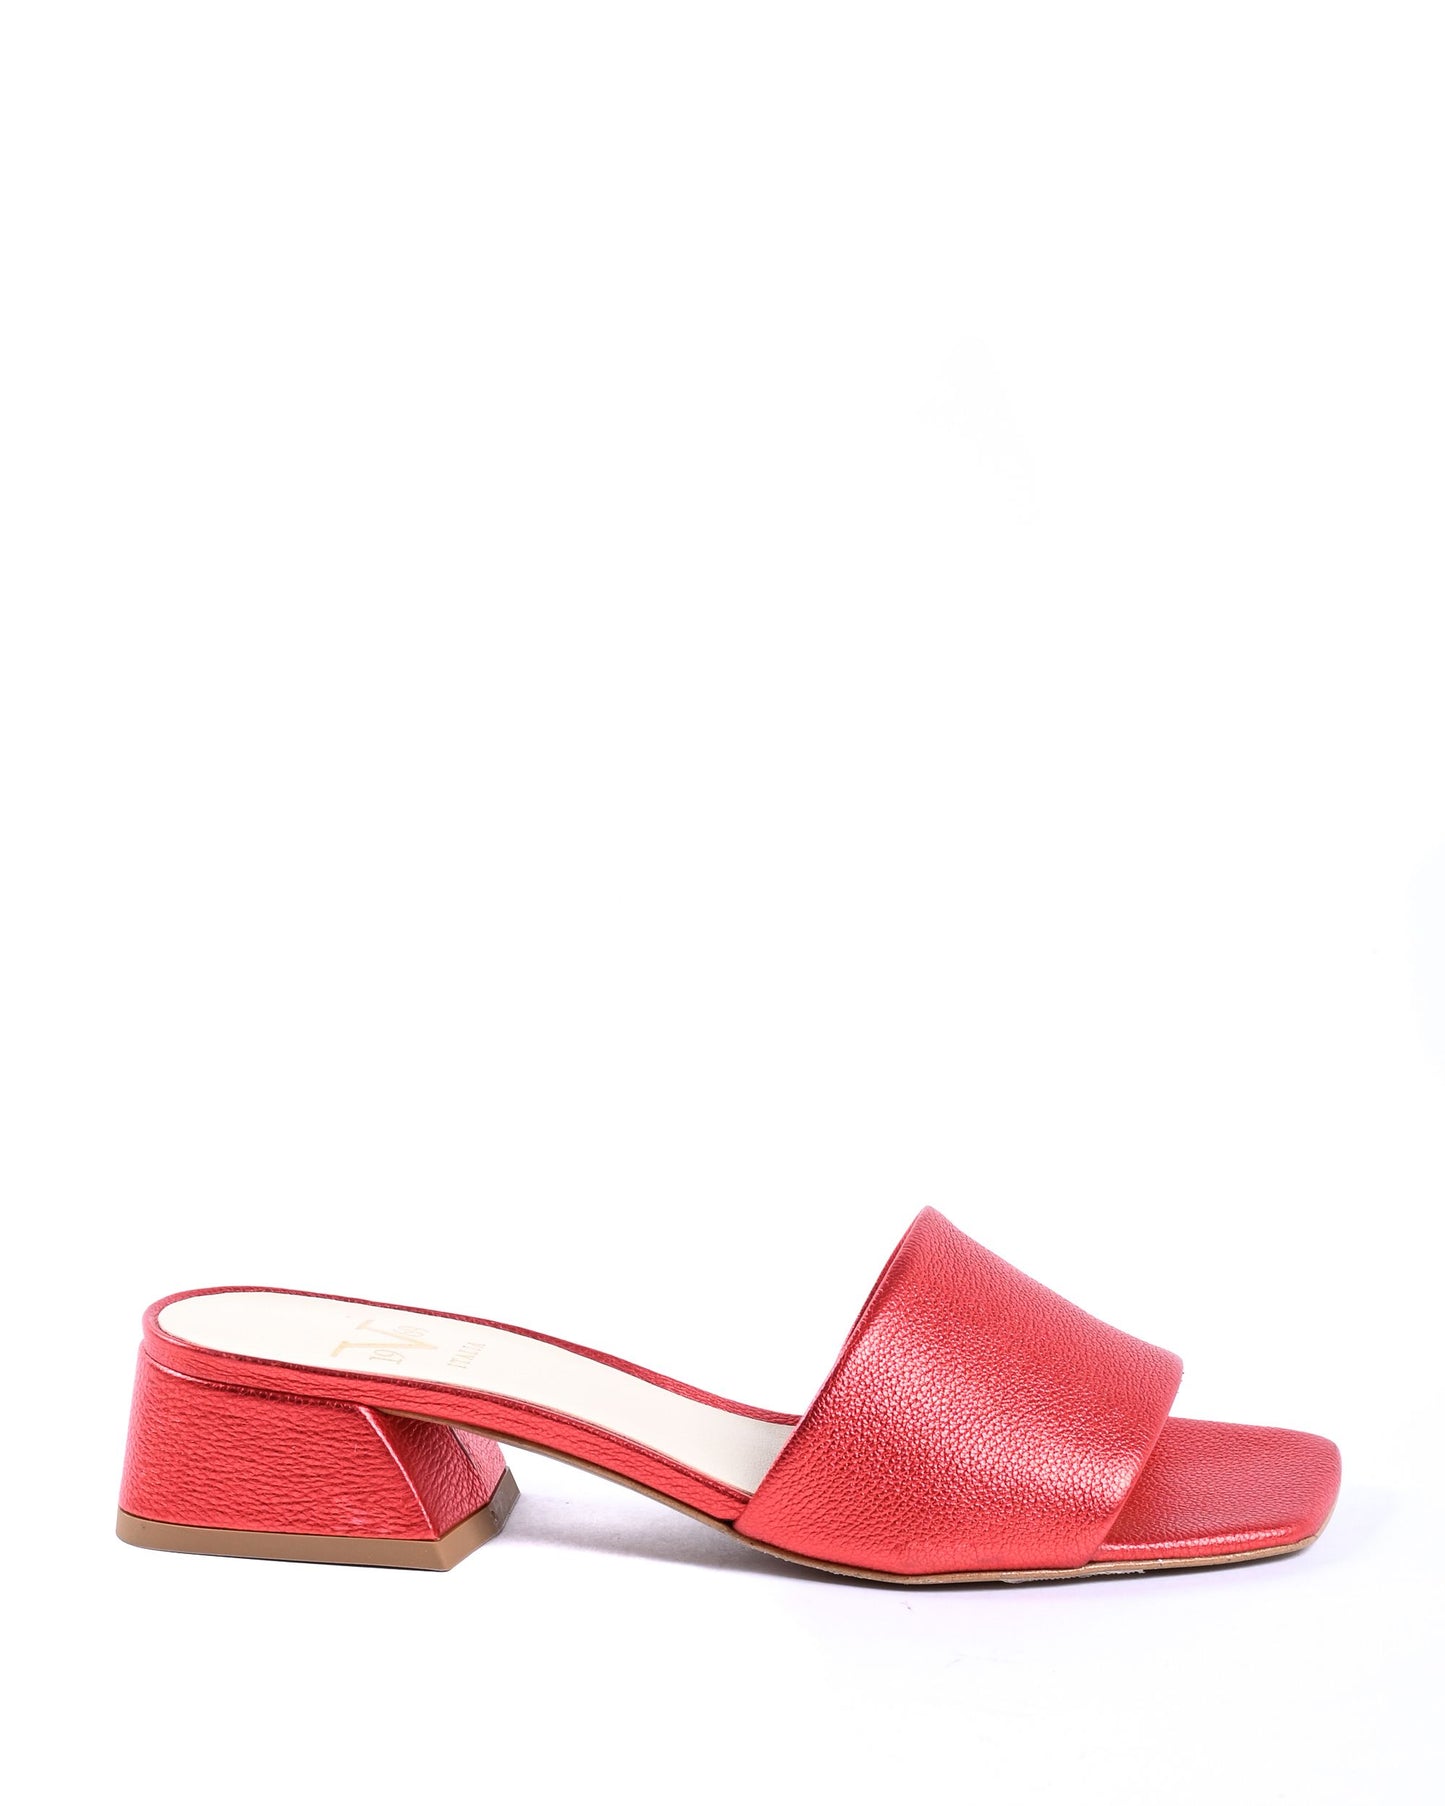 19V69 Italia Womens Sandal Red NEPER VIT. BOT. ROSSO